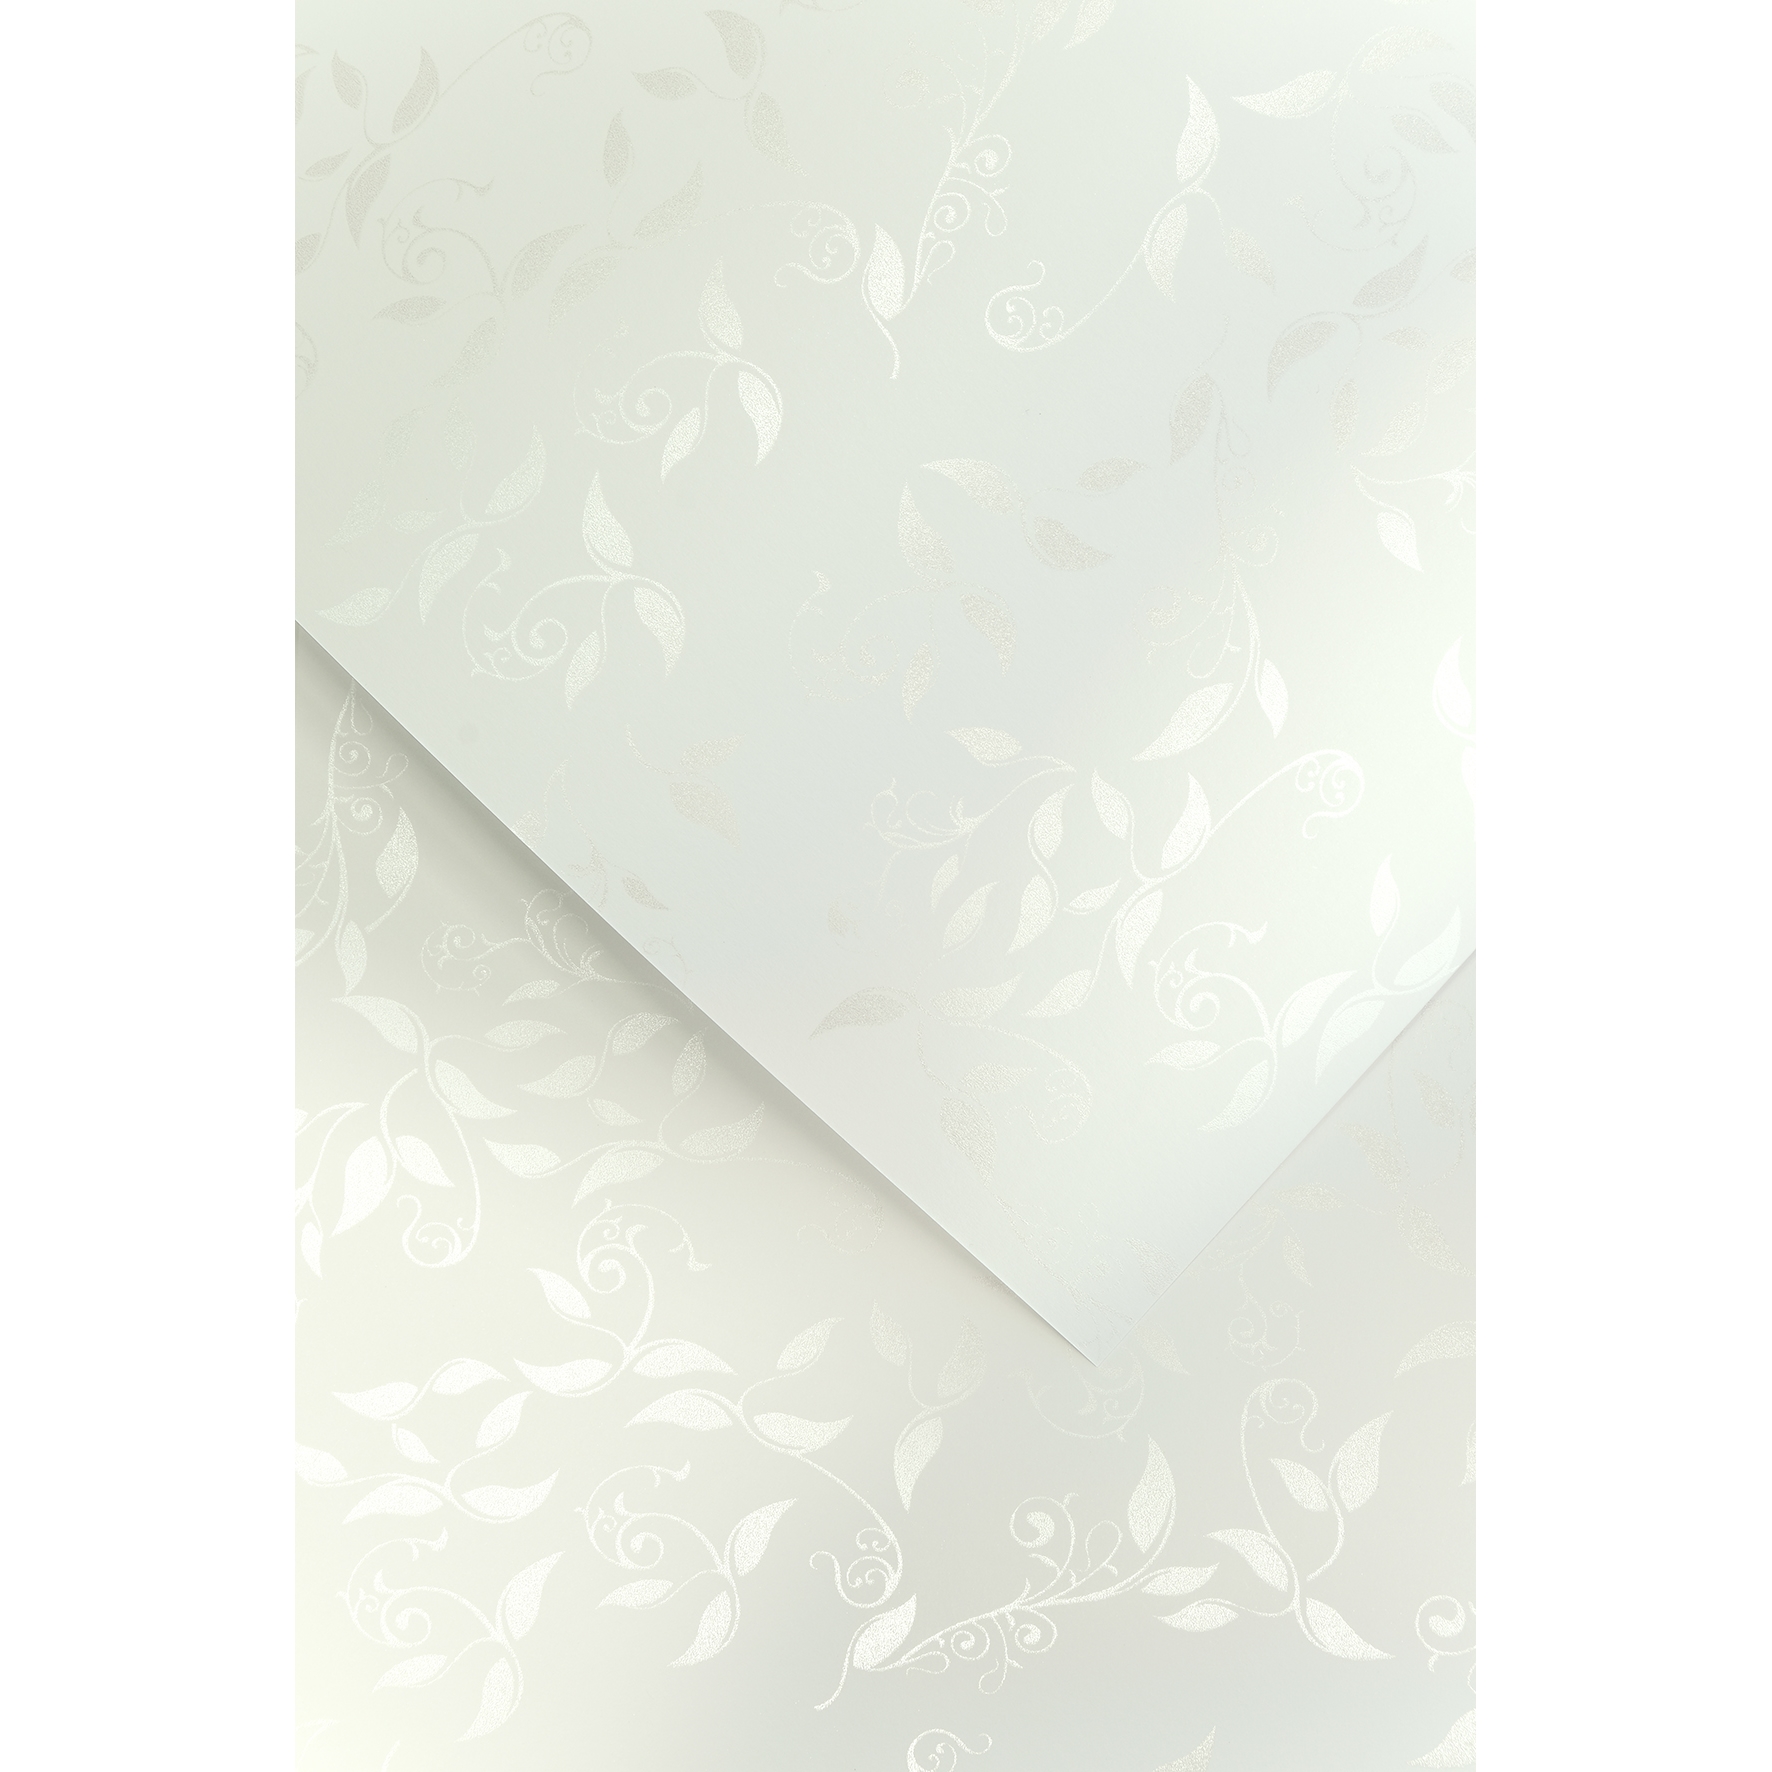 Ozdobný papír Liana, bílý, 230g, 20ks